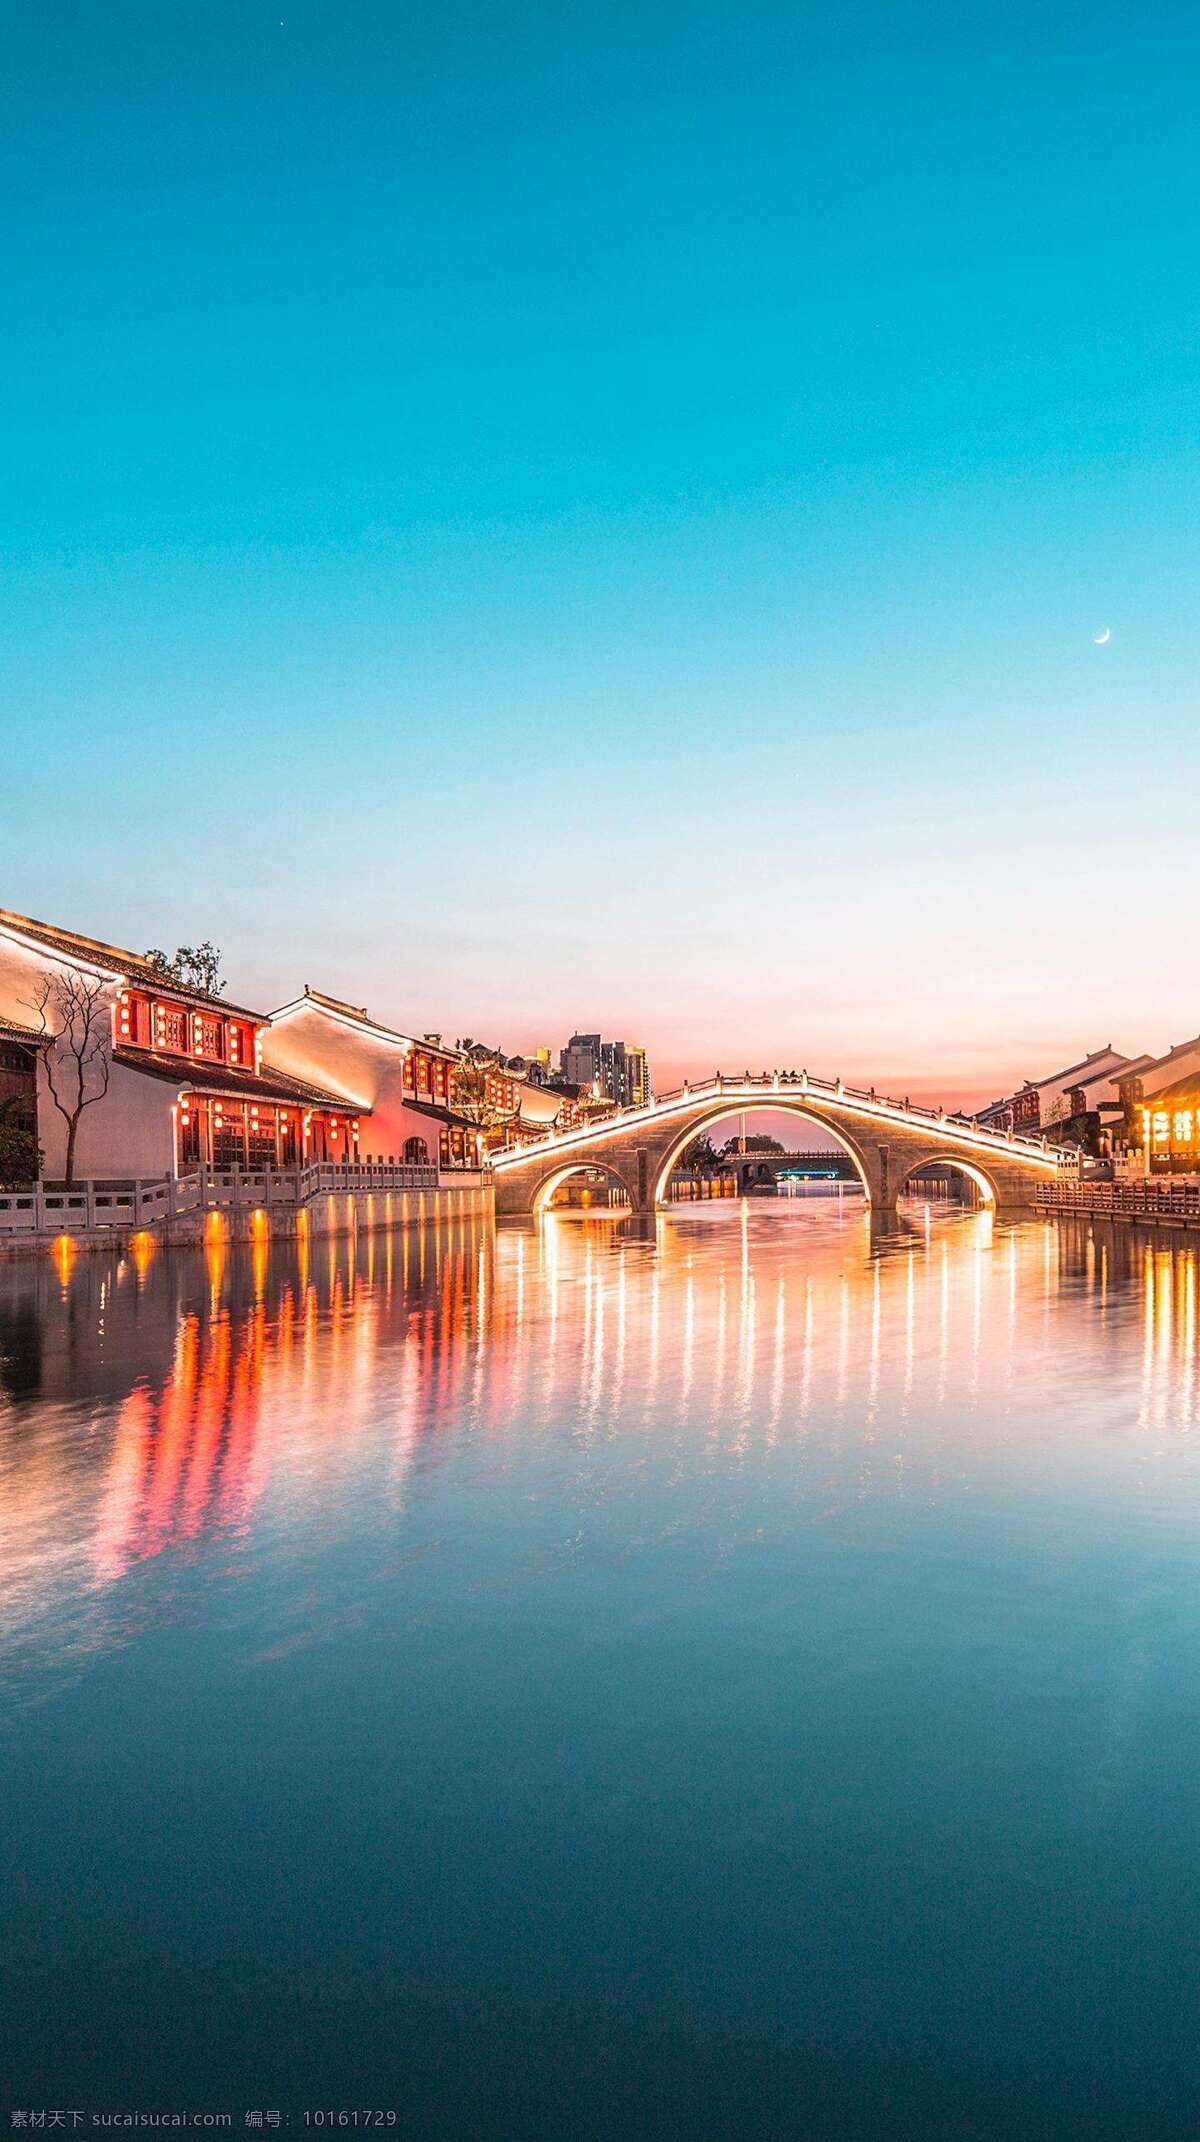 苏州河畔 苏州 河畔 小河 小桥流水 古朴 古典 江苏 旅游摄影 国内旅游